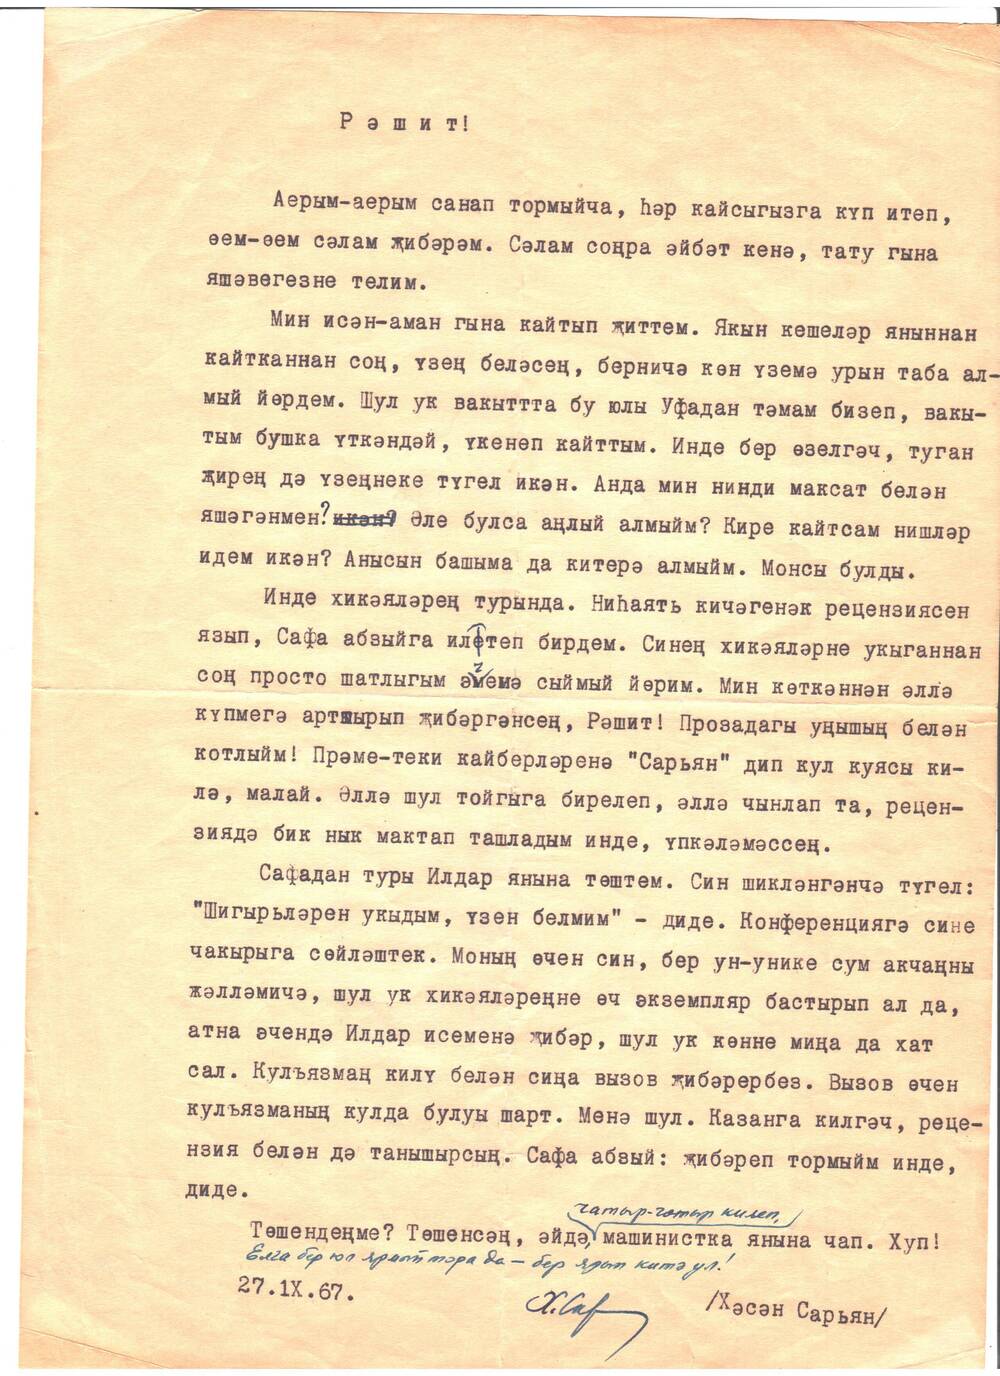 Письмо Хасана Сарьяна Фазлыеву Рашиту от 27.1Х. 1967 года, на одном листе, напечатано машинкой, есть дополнения от руки синей ручкой